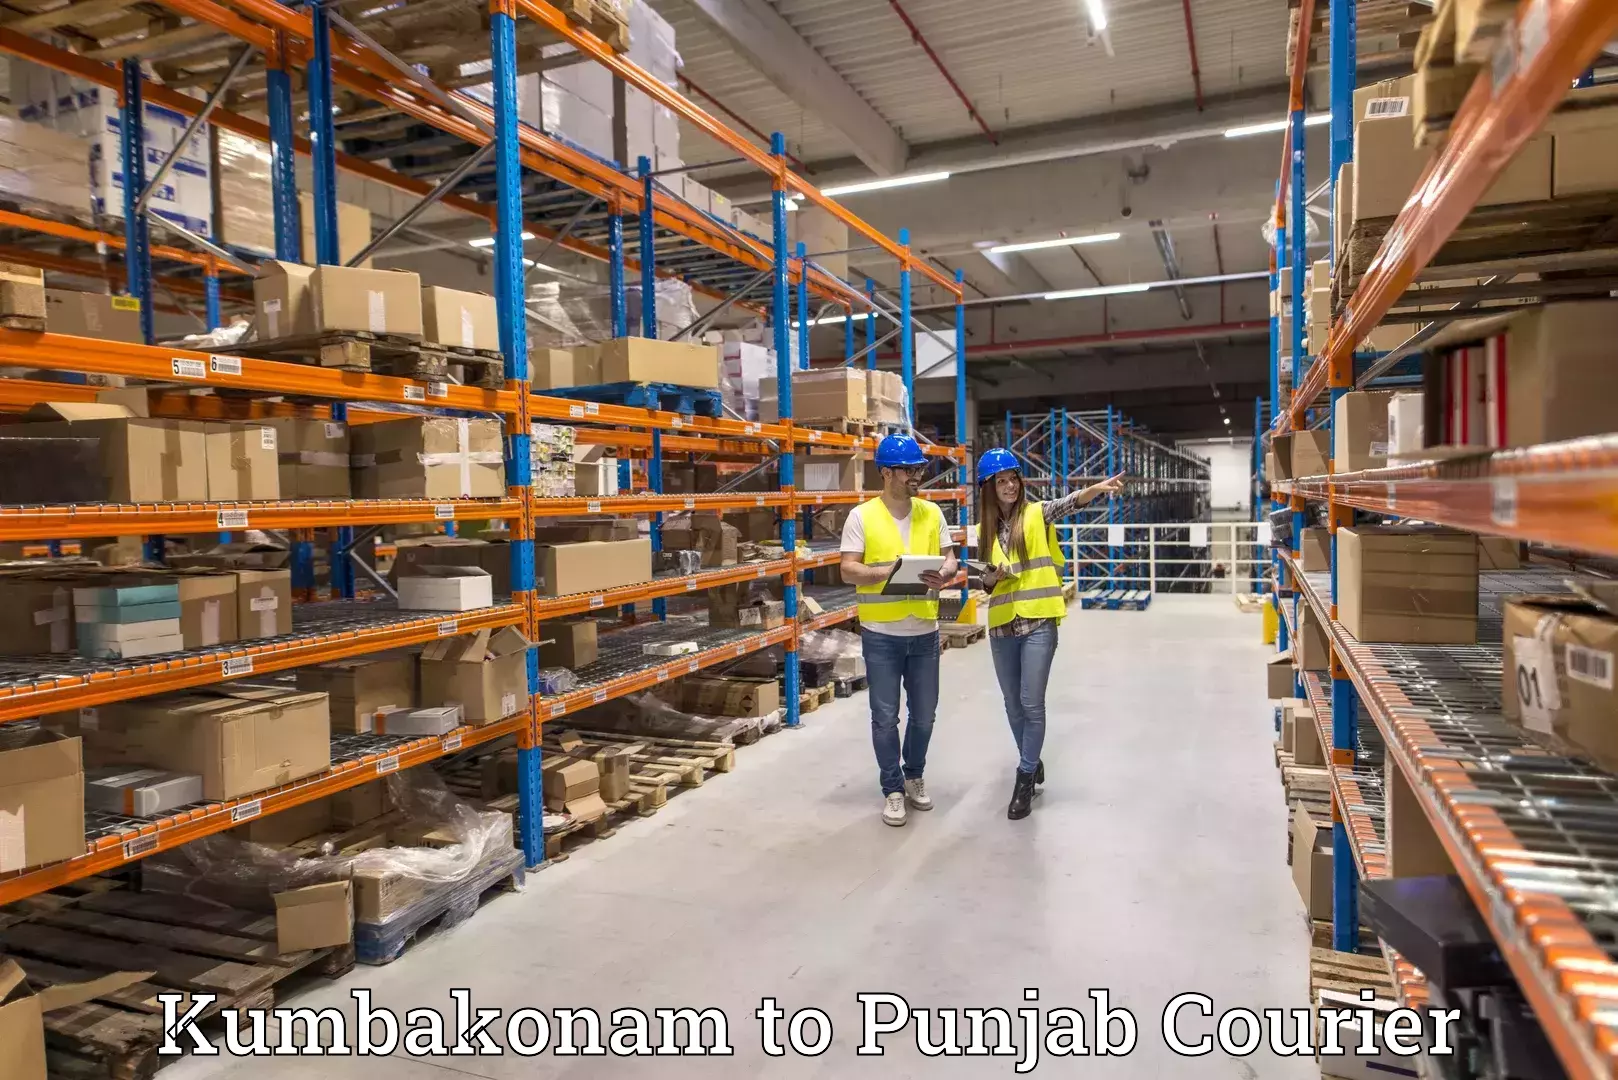 Pharmaceutical courier Kumbakonam to Punjab